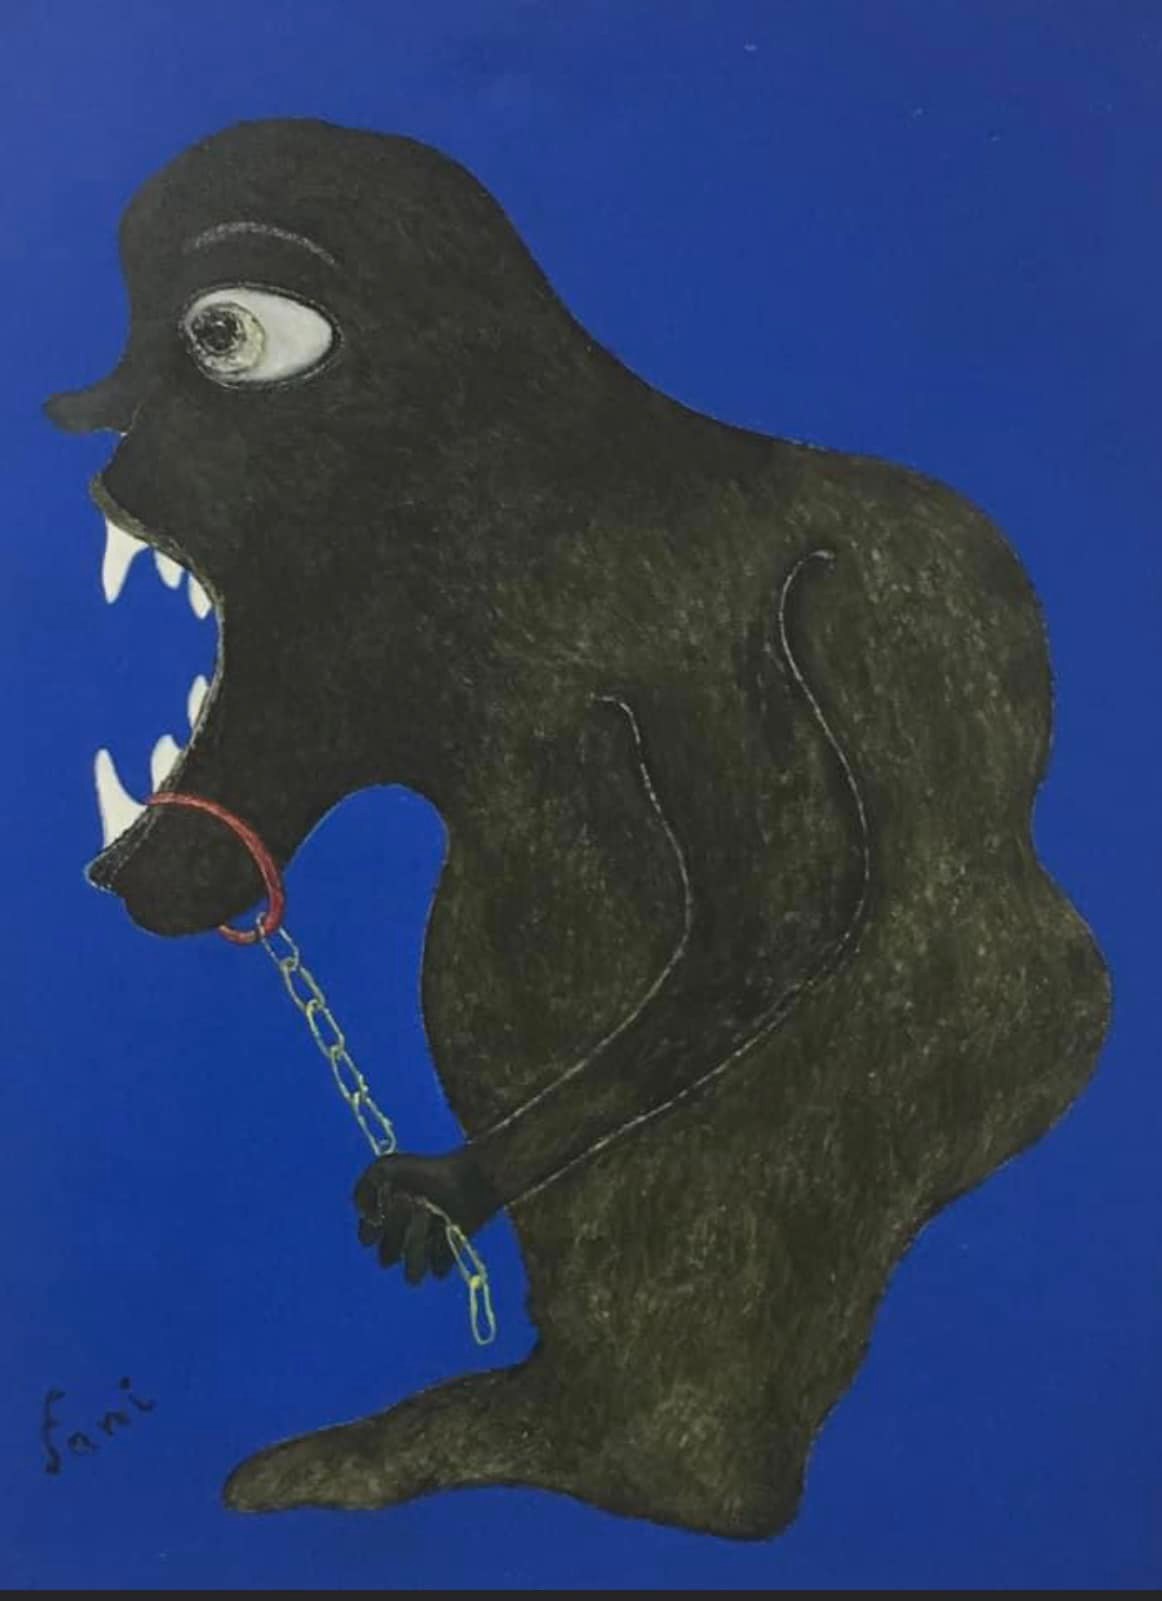 “Plutokratët në panik” nga vetja e tyre, kritikë për ekspozitën personale të artistit Ardian Tragaj